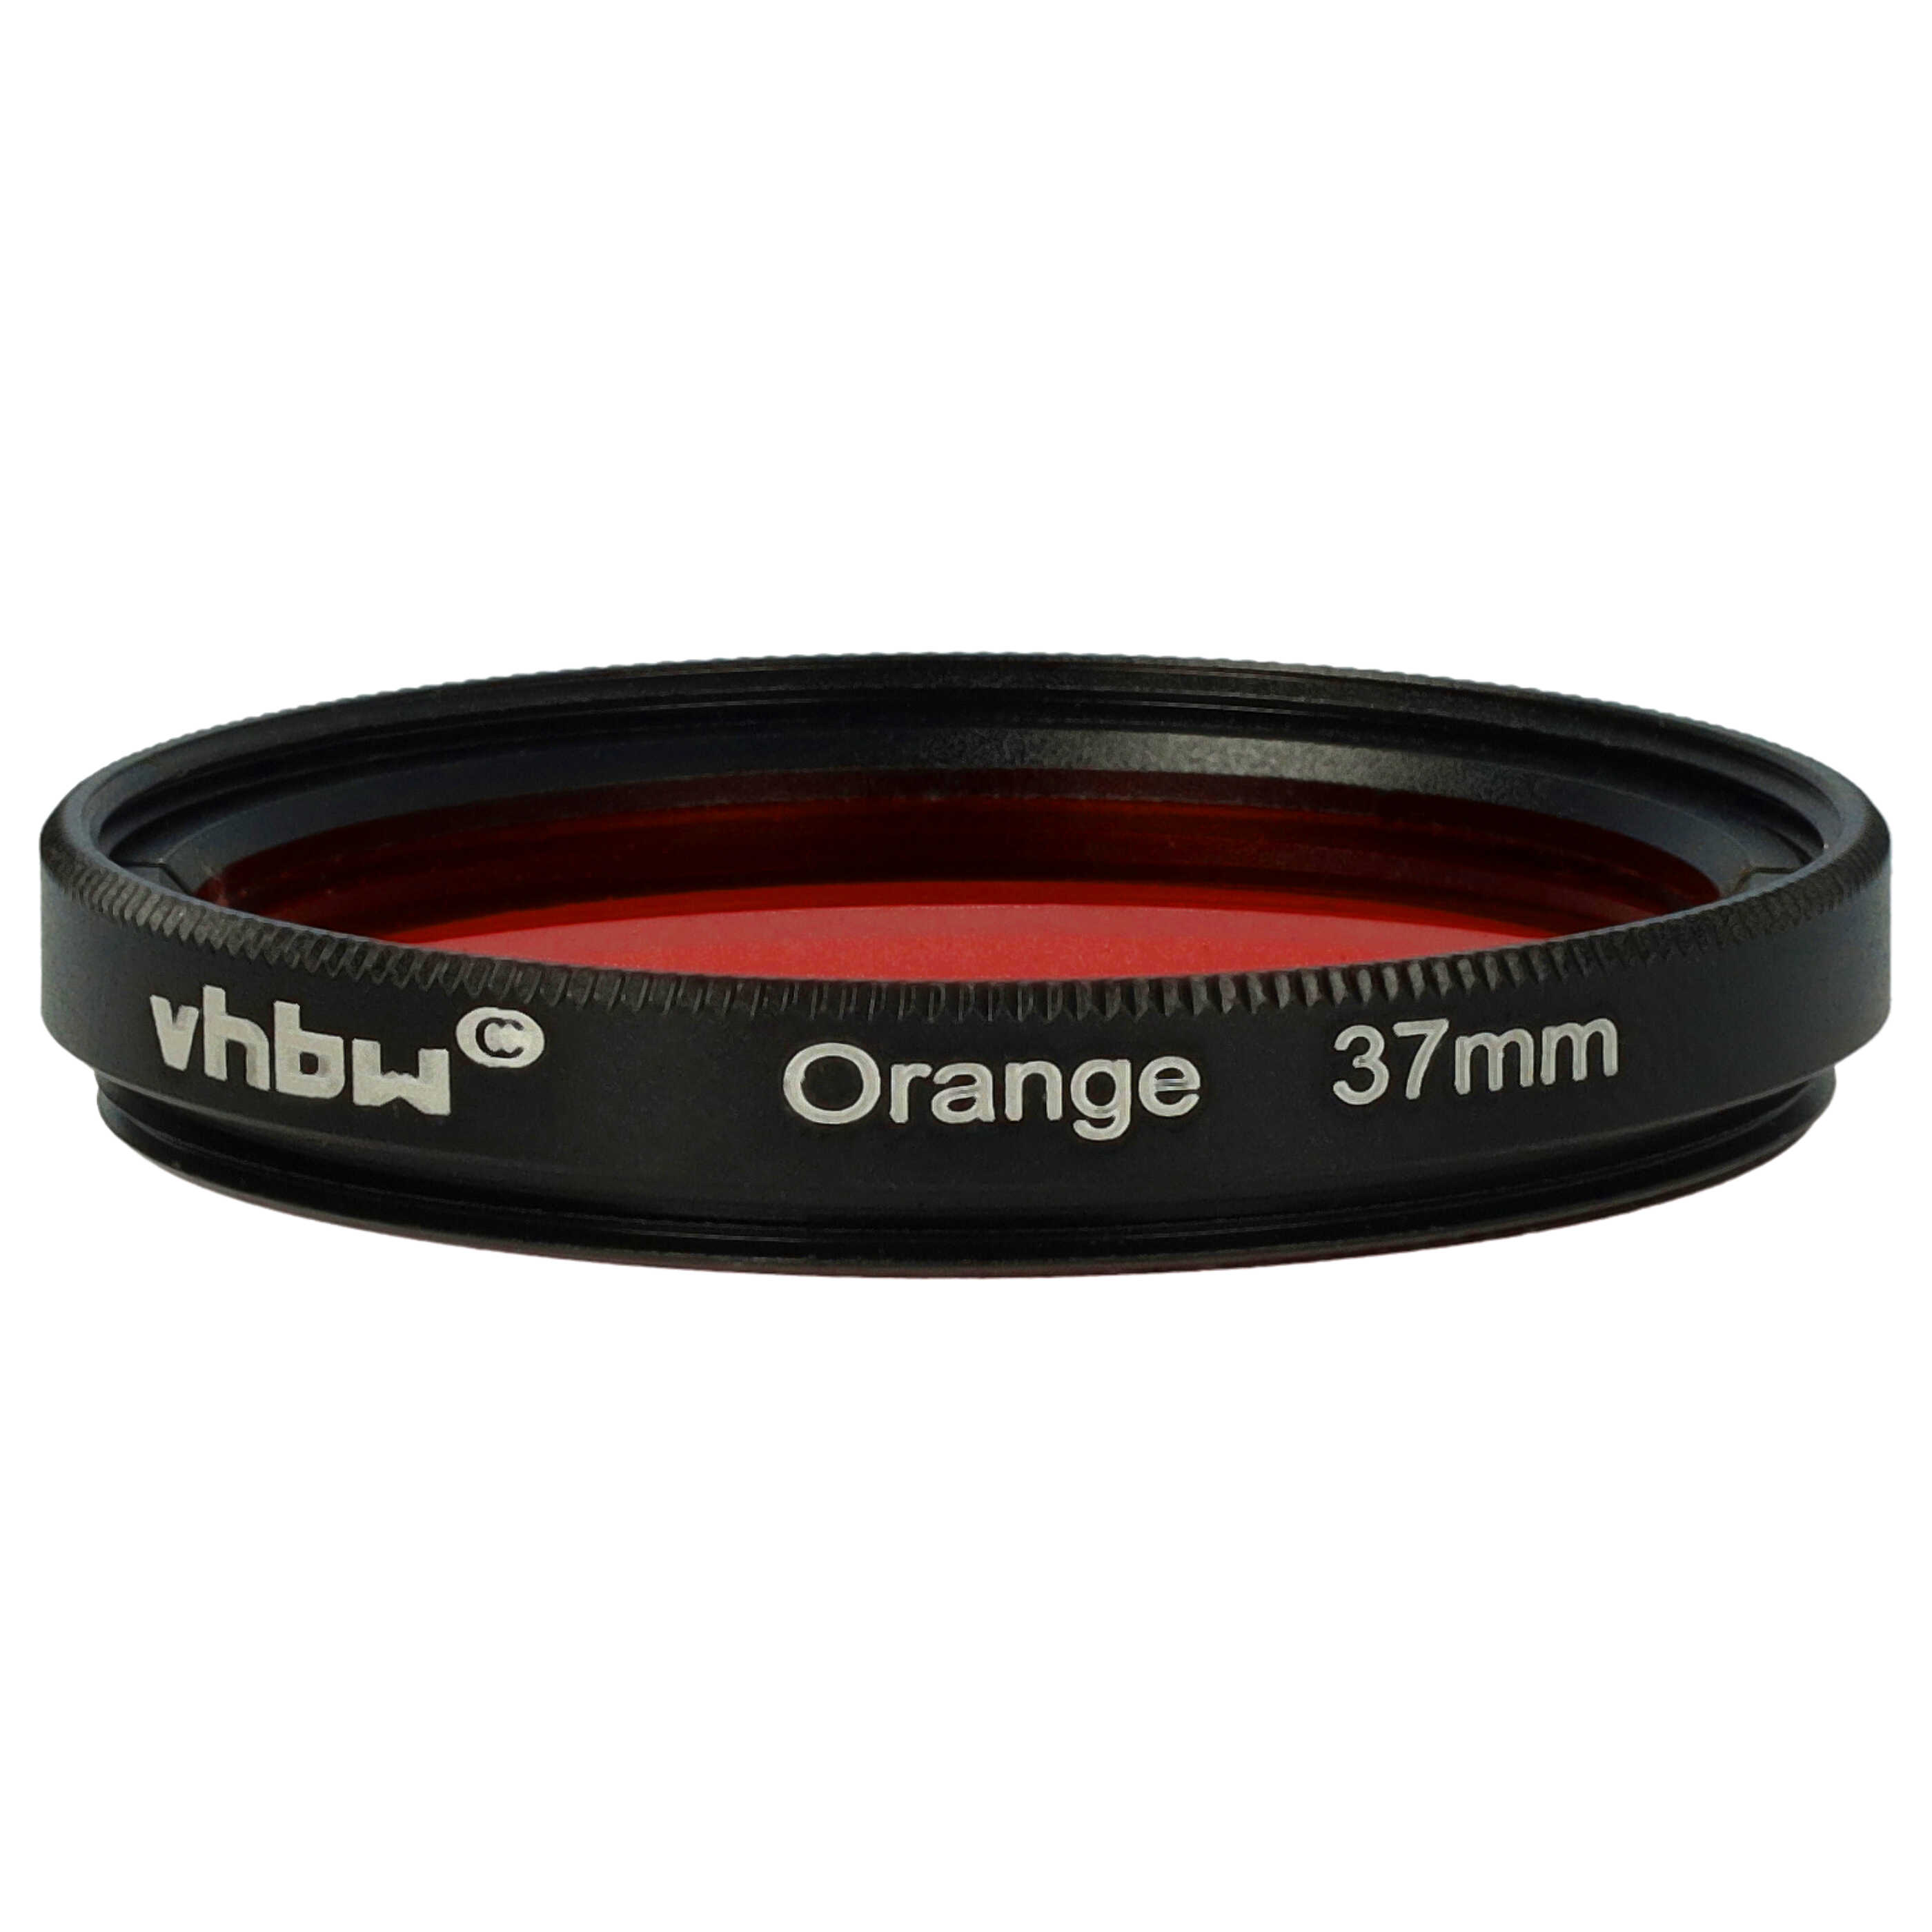 Filtro de color para objetivo de cámara con rosca de filtro de 37 mm - Filtro naranja